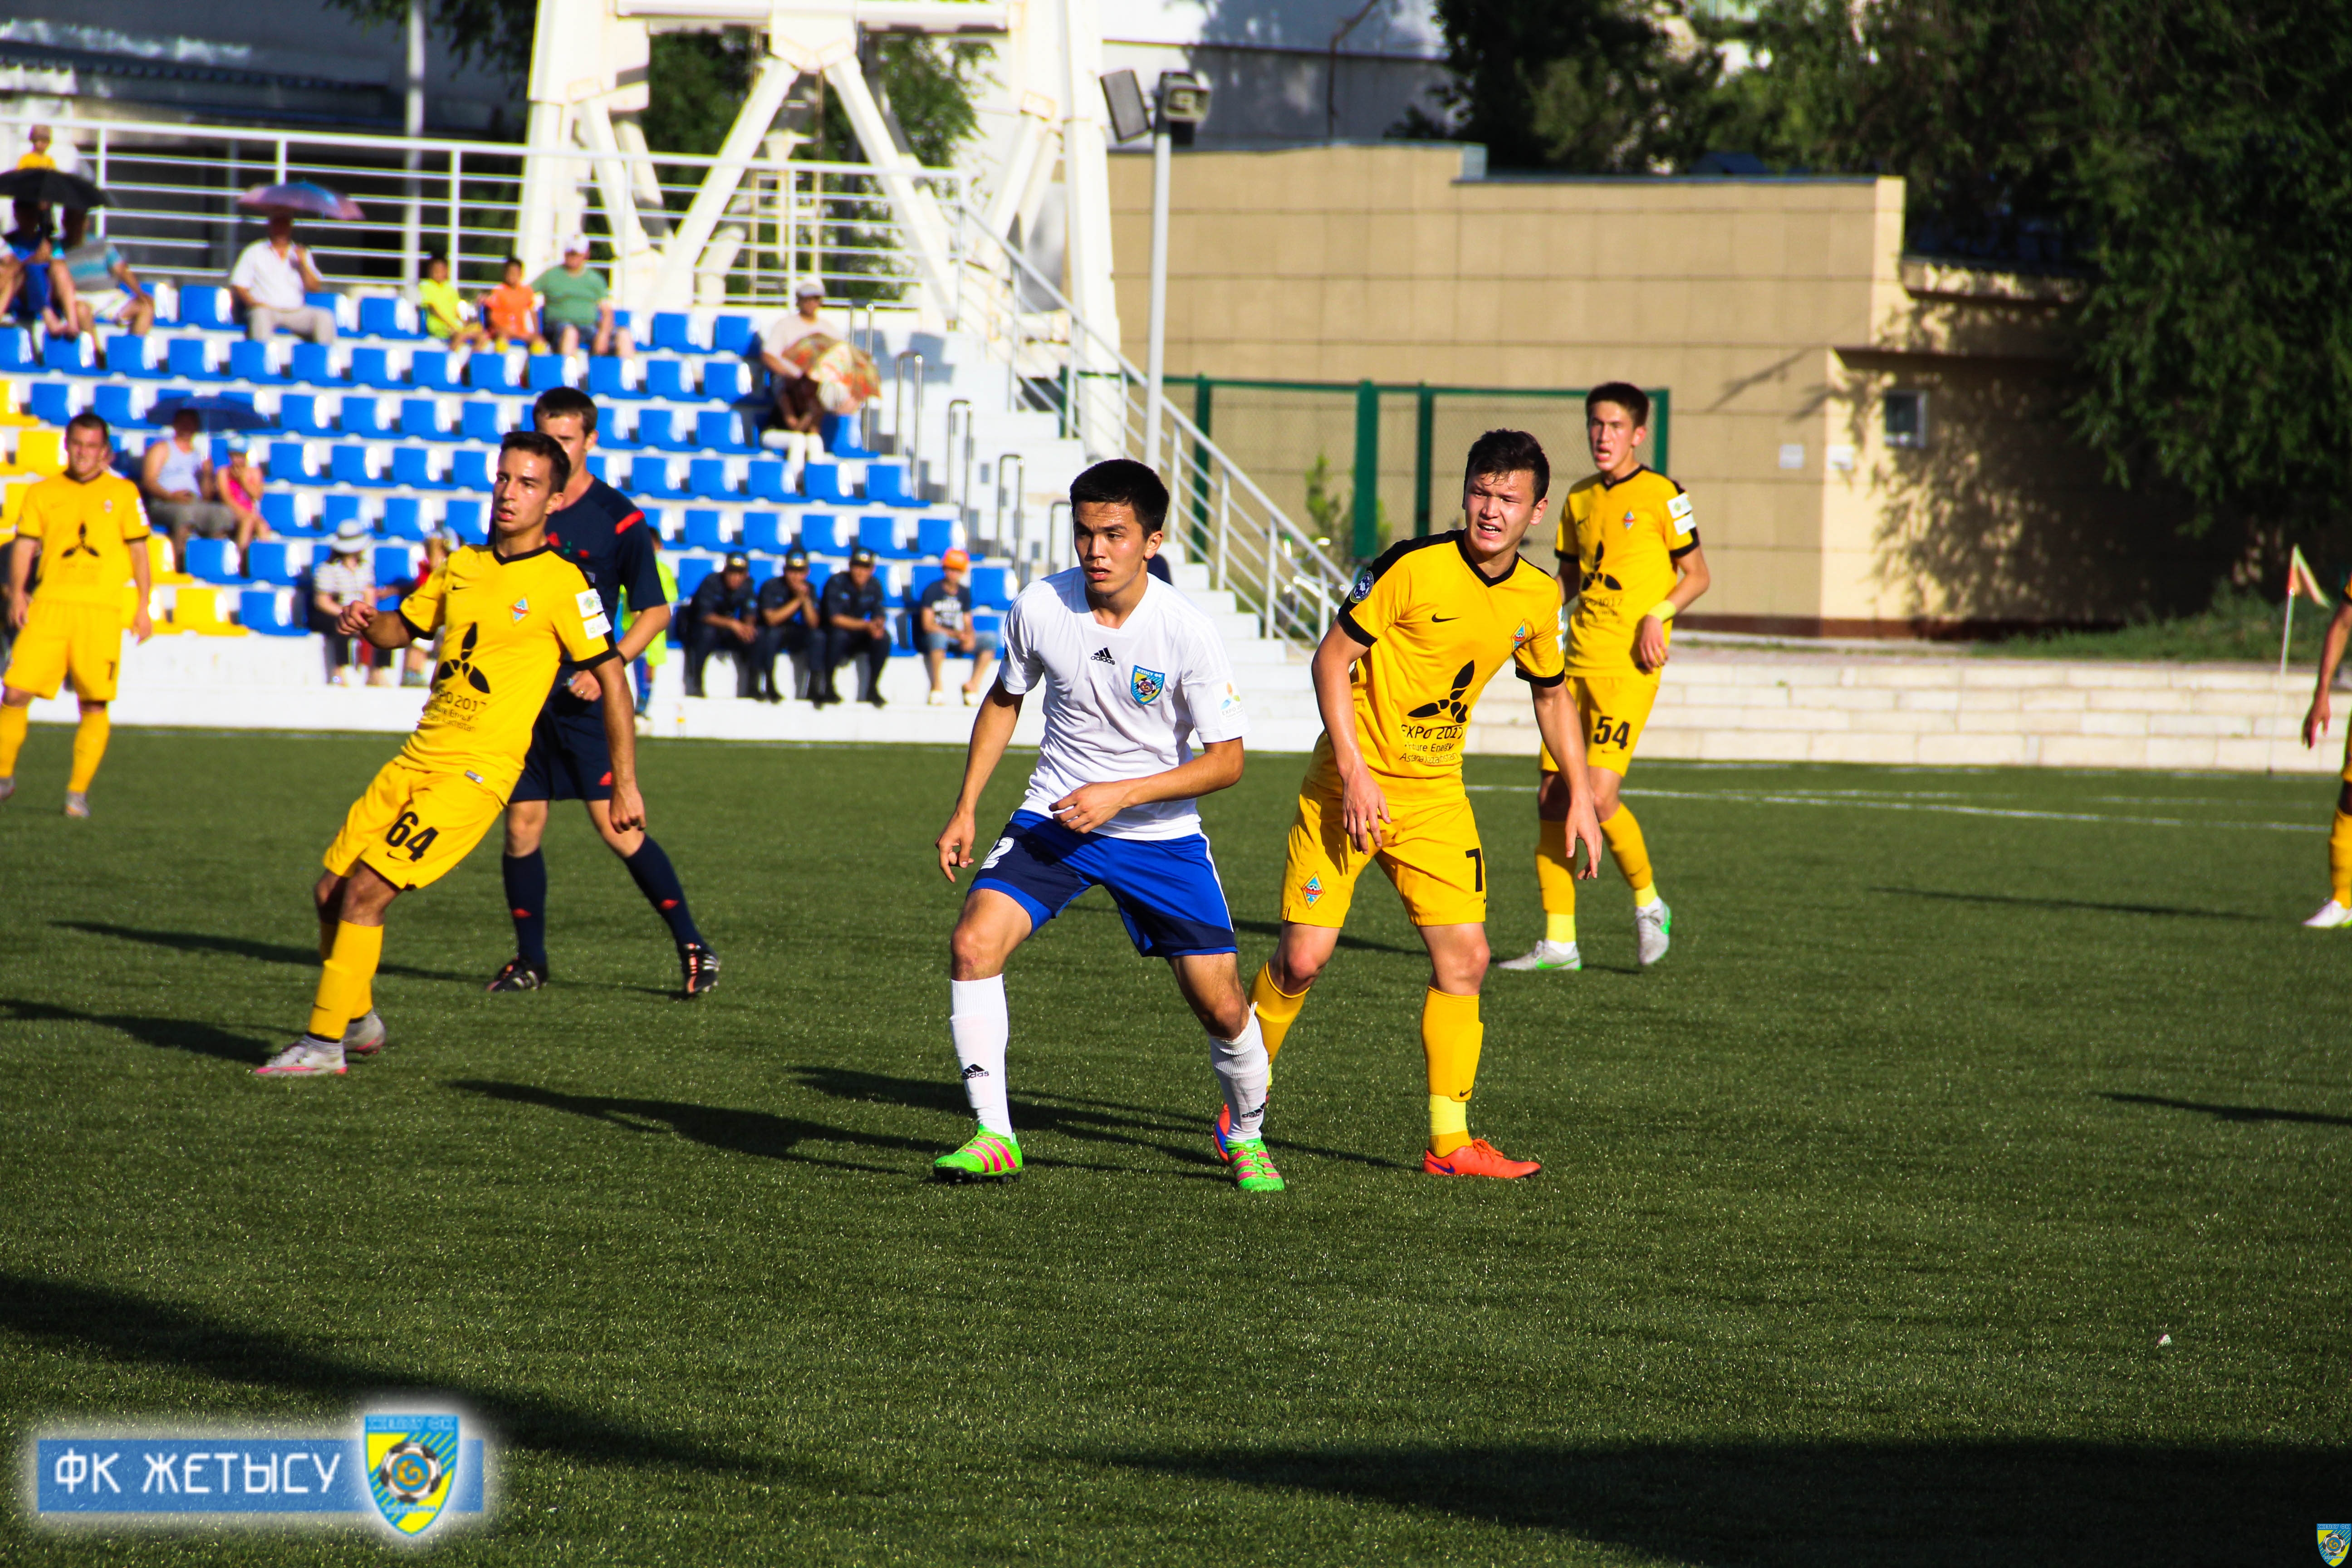 Е жетысу кз. ФК Жетысу. Жетысу 3. Match Day FC Kairat. Kayrat Football Club.